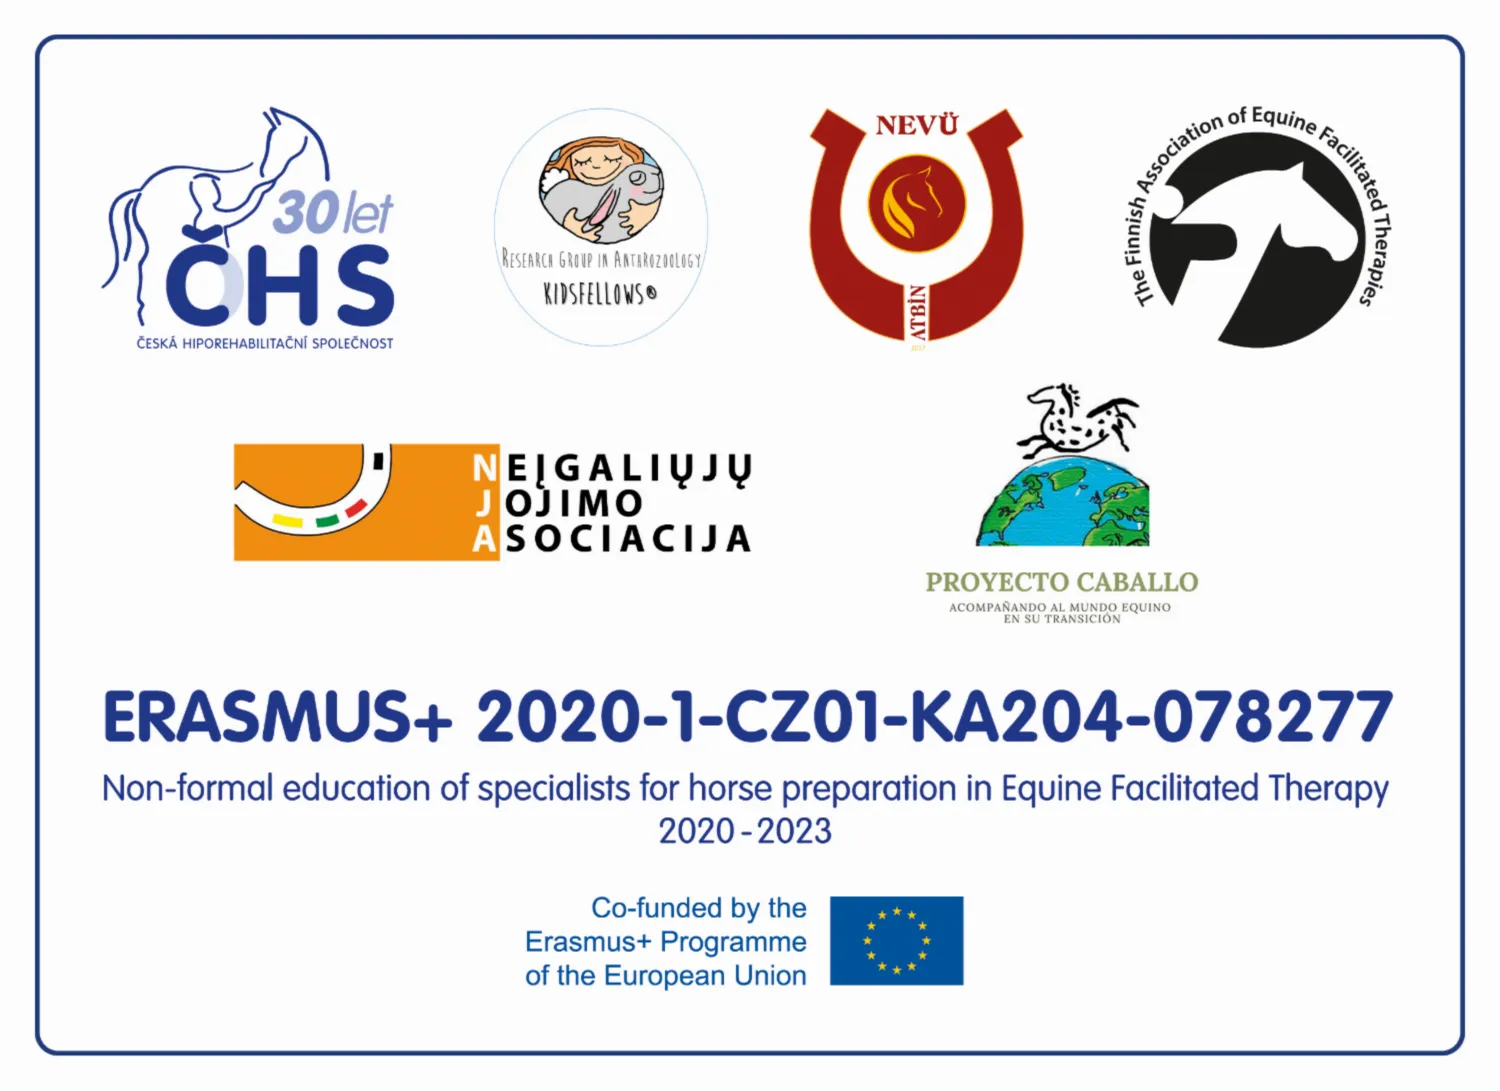 NEW-logo-projekt Erasmus-2020